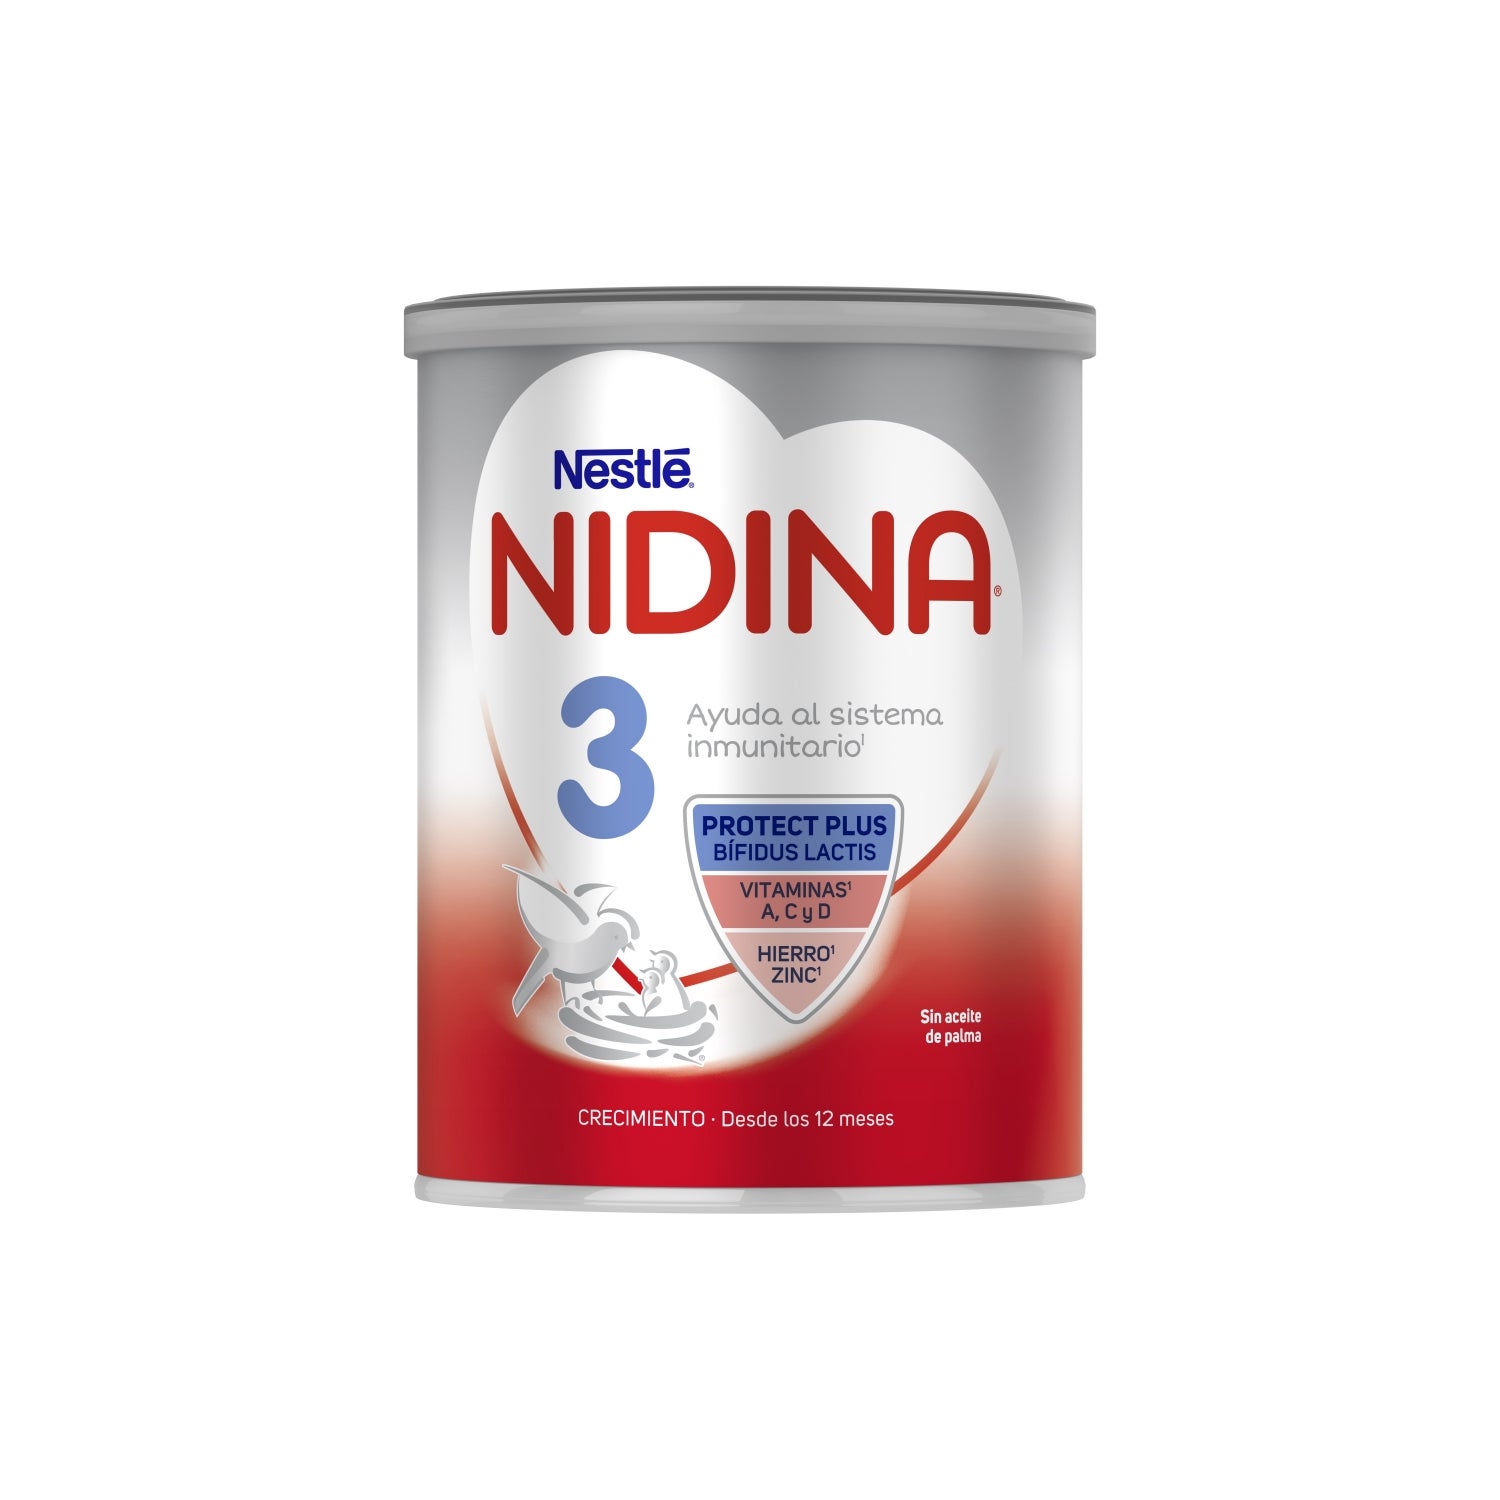 Nidina 2 Leche de Continuación Líquida +6m 1 L